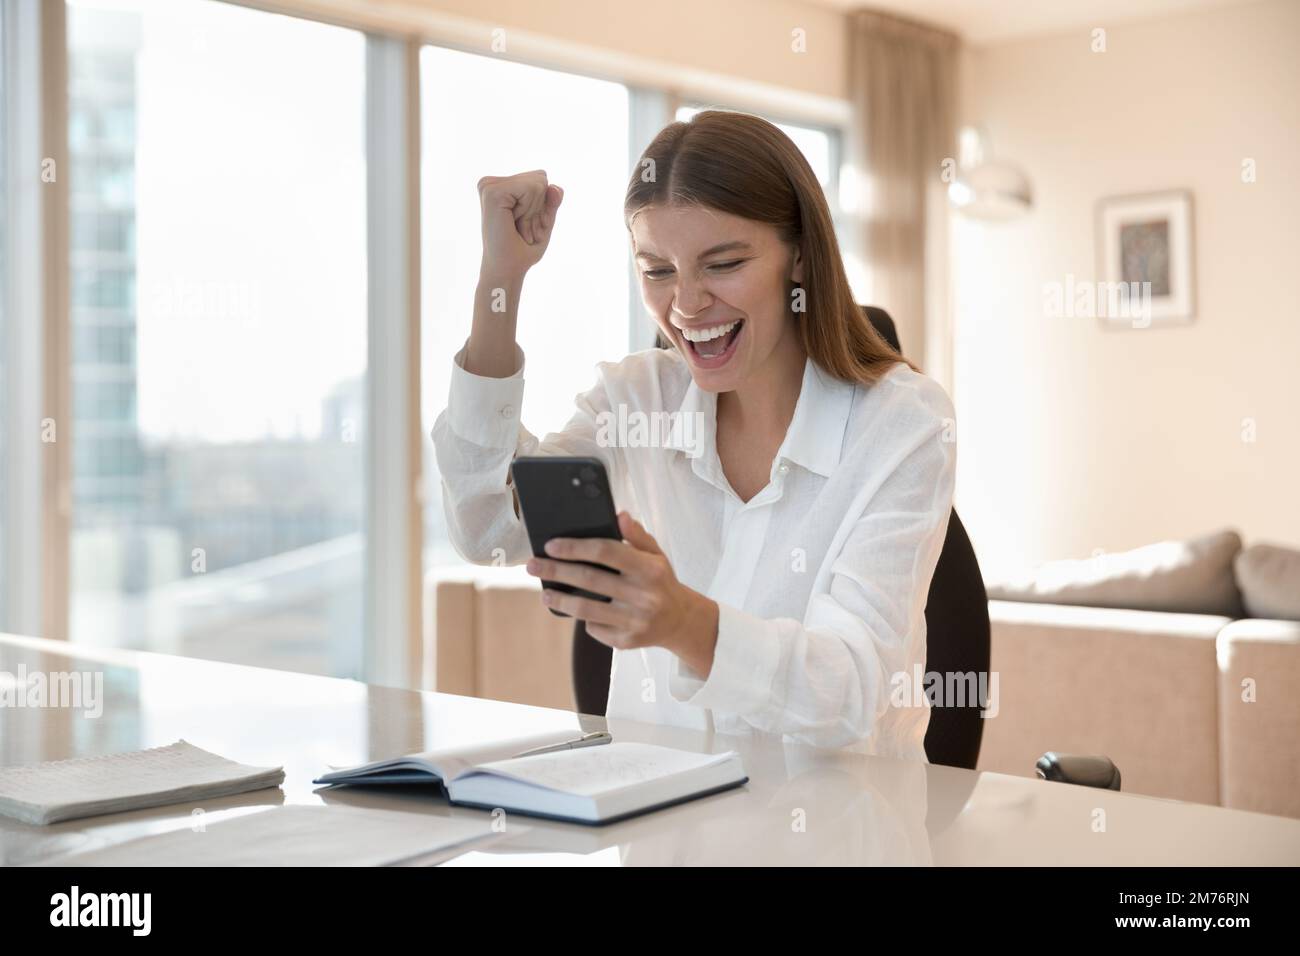 Eine Frau hält das Telefon und erhalte fantastische Nachrichten per sms. Fühlt sich glücklich an Stockfoto